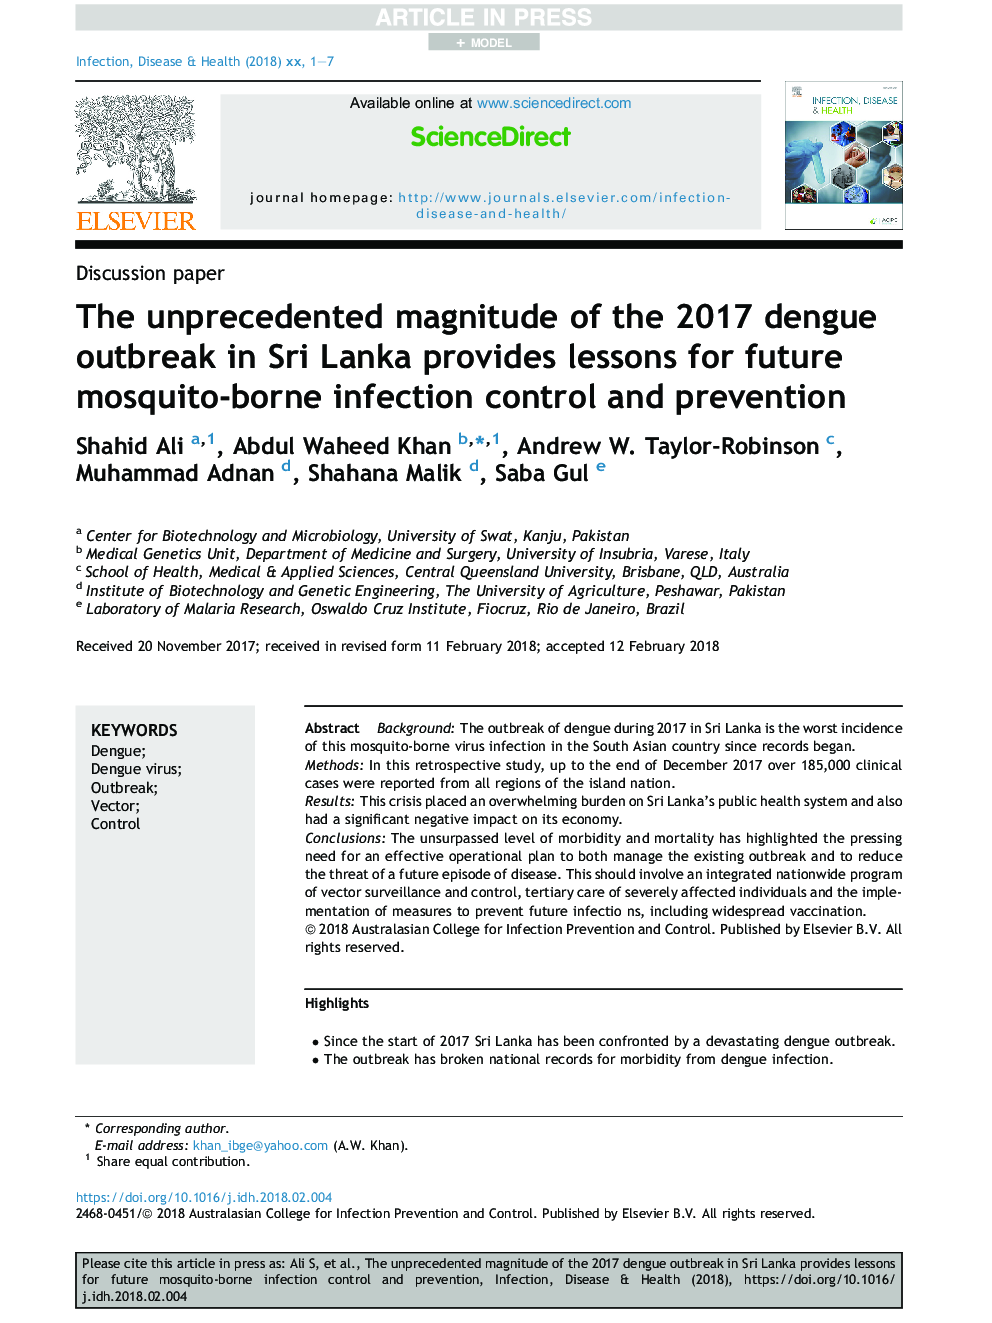 میزان بی سابقه شیوع بیماری دنج 2017 در سریلانکا درس هایی را برای کنترل و پیشگیری از آلودگی های پشه های آینده فراهم می کند 